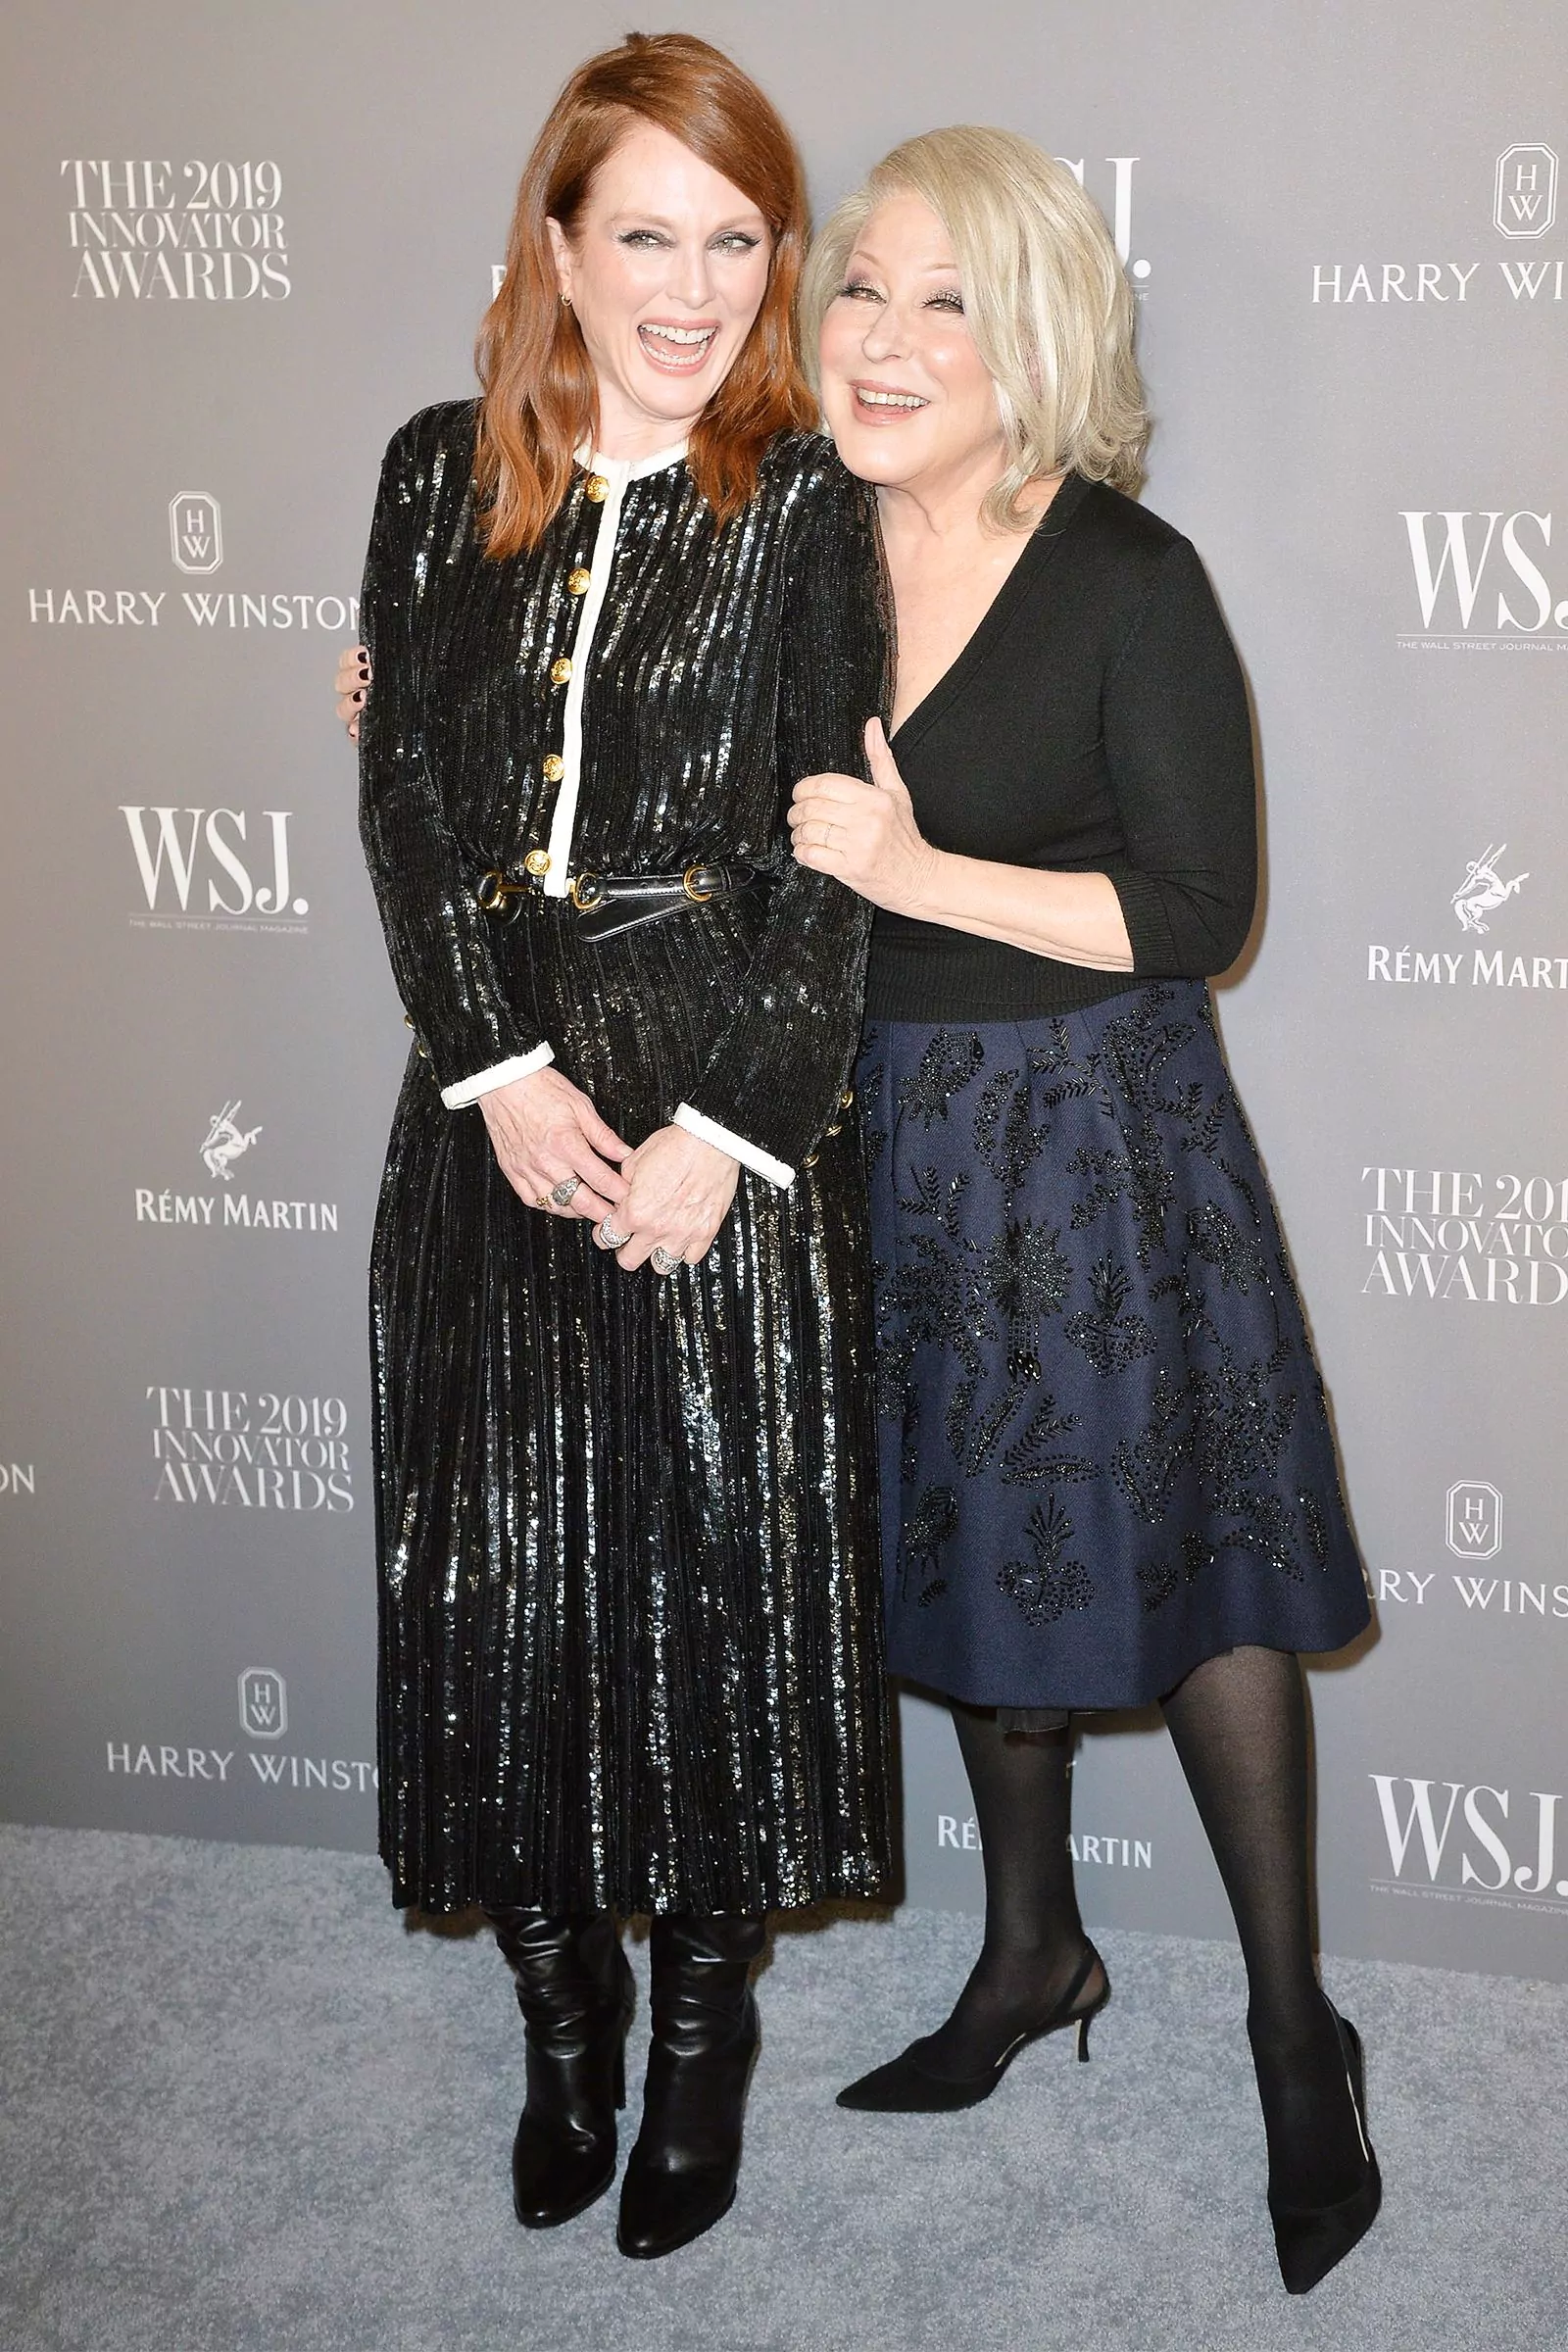 Джулианна Мур и Бетт Мидлер на церемонии вручения премии Wall Street Journal 2019 в Нью-Йорке, 6 ноября 2019 г.